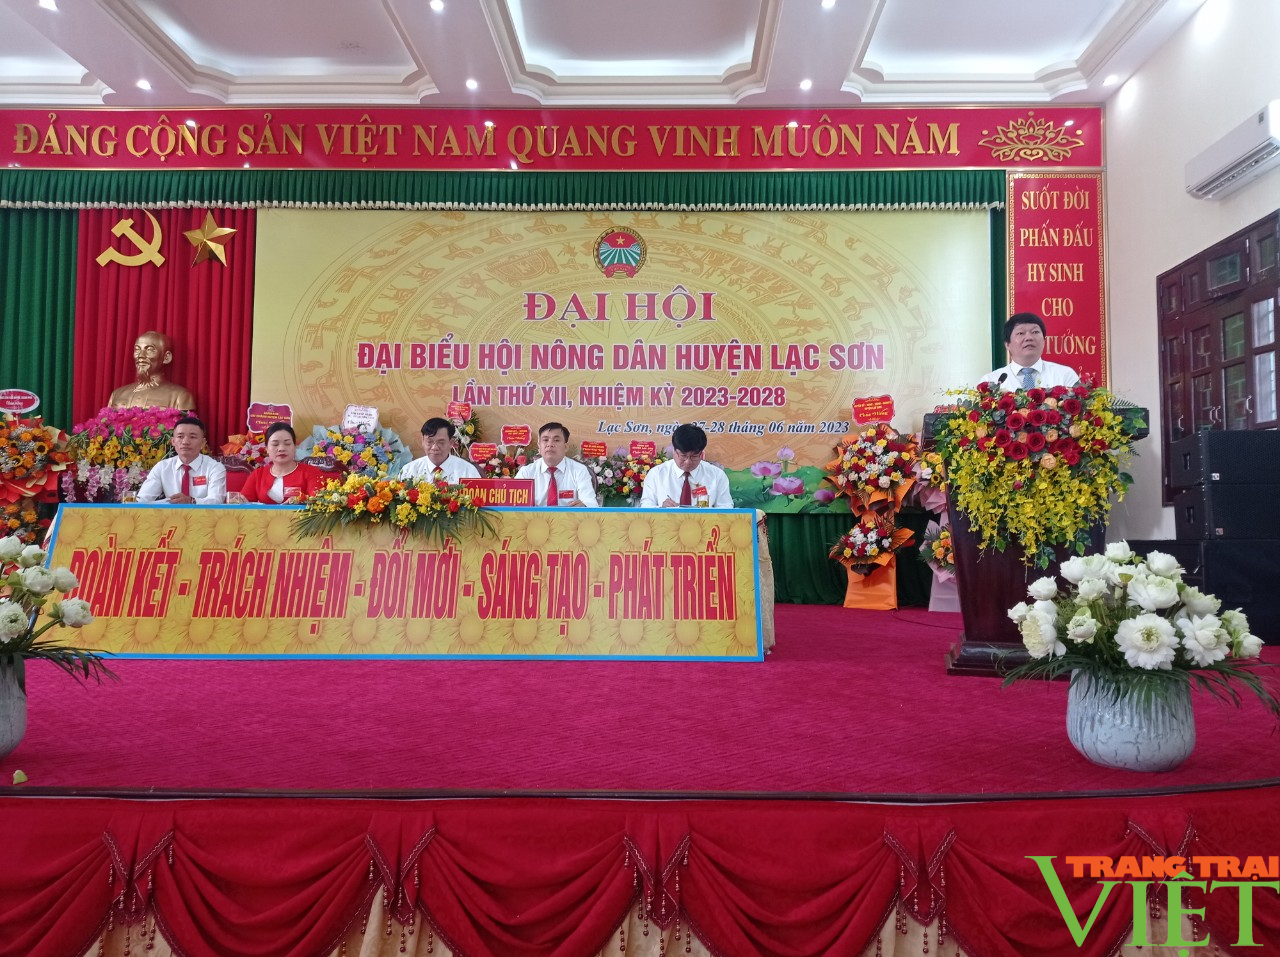 Hòa Bình: Ông Đinh Văn Toán trúng cử chức Chủ tịch Hội Nông dân huyện Lạc Sơn - Ảnh 2.